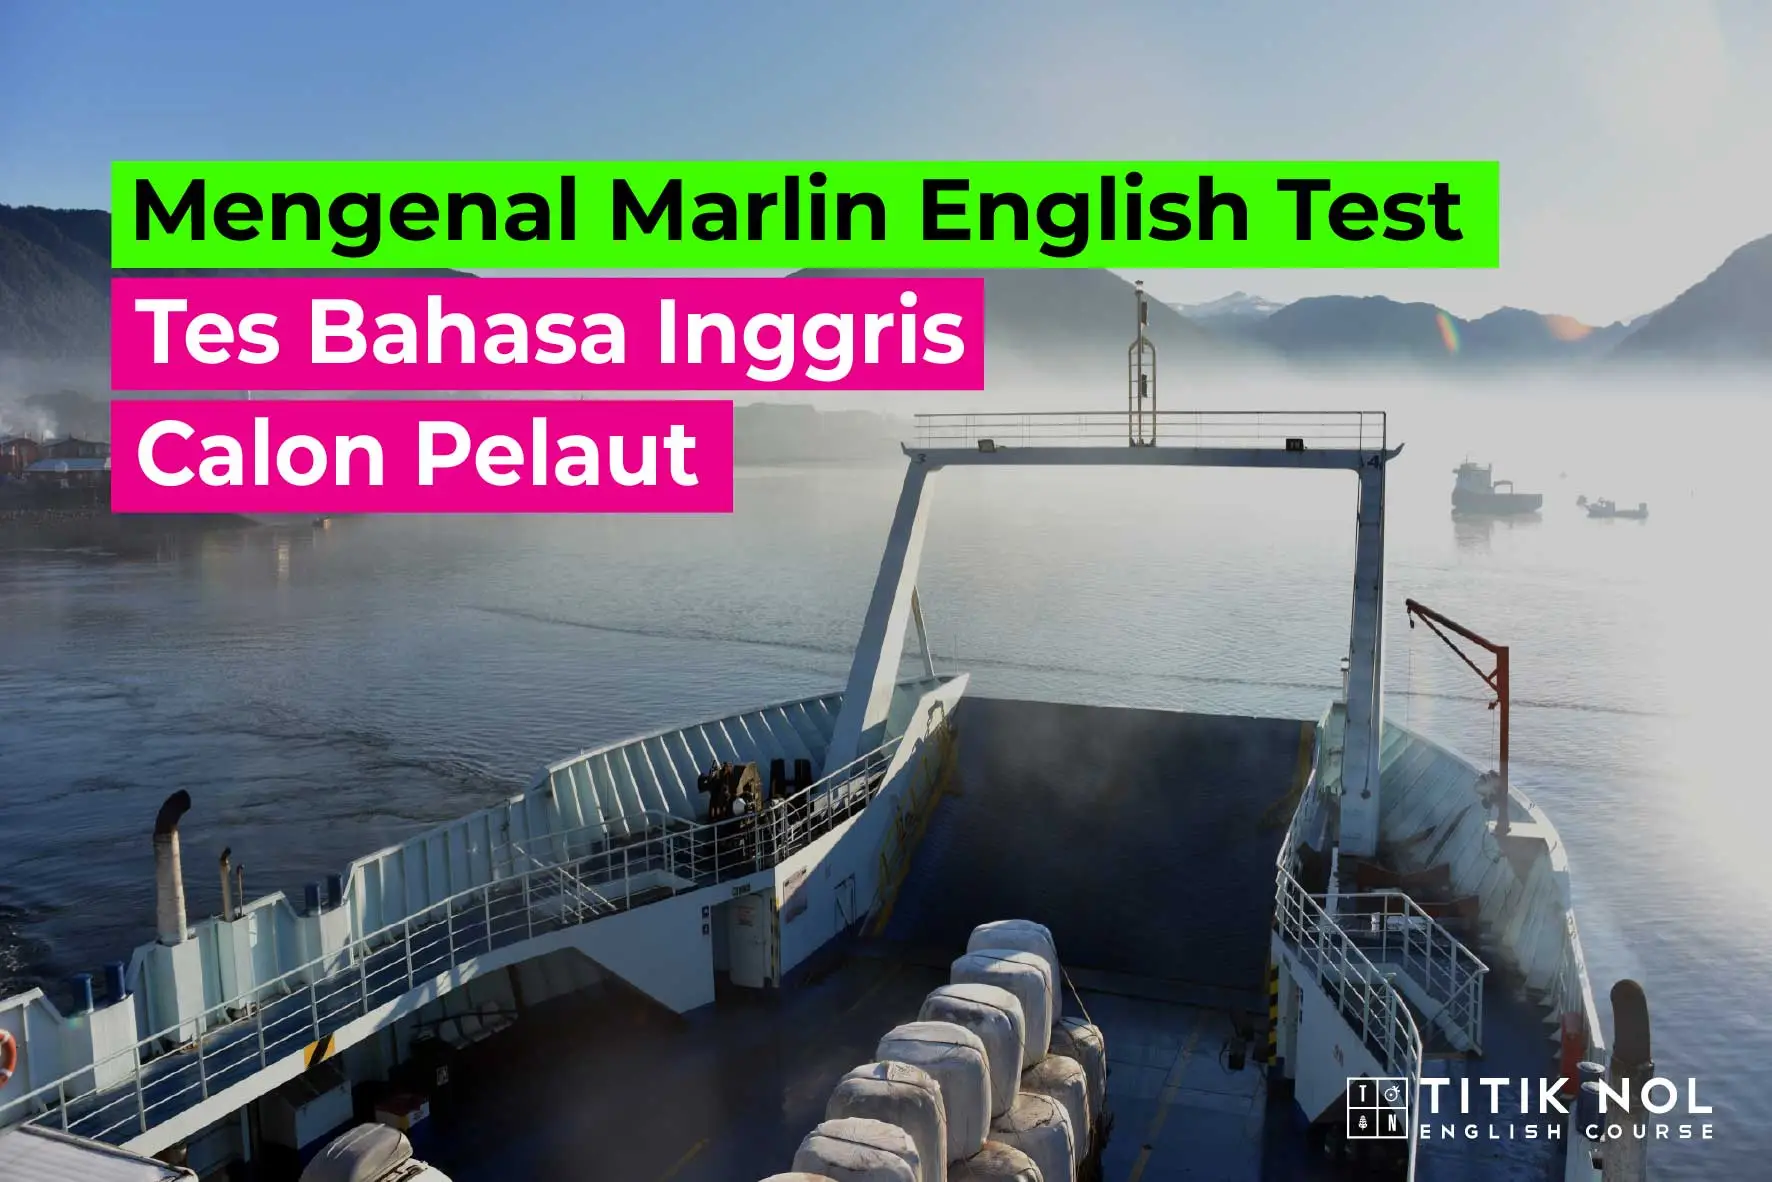 Marlin English Test